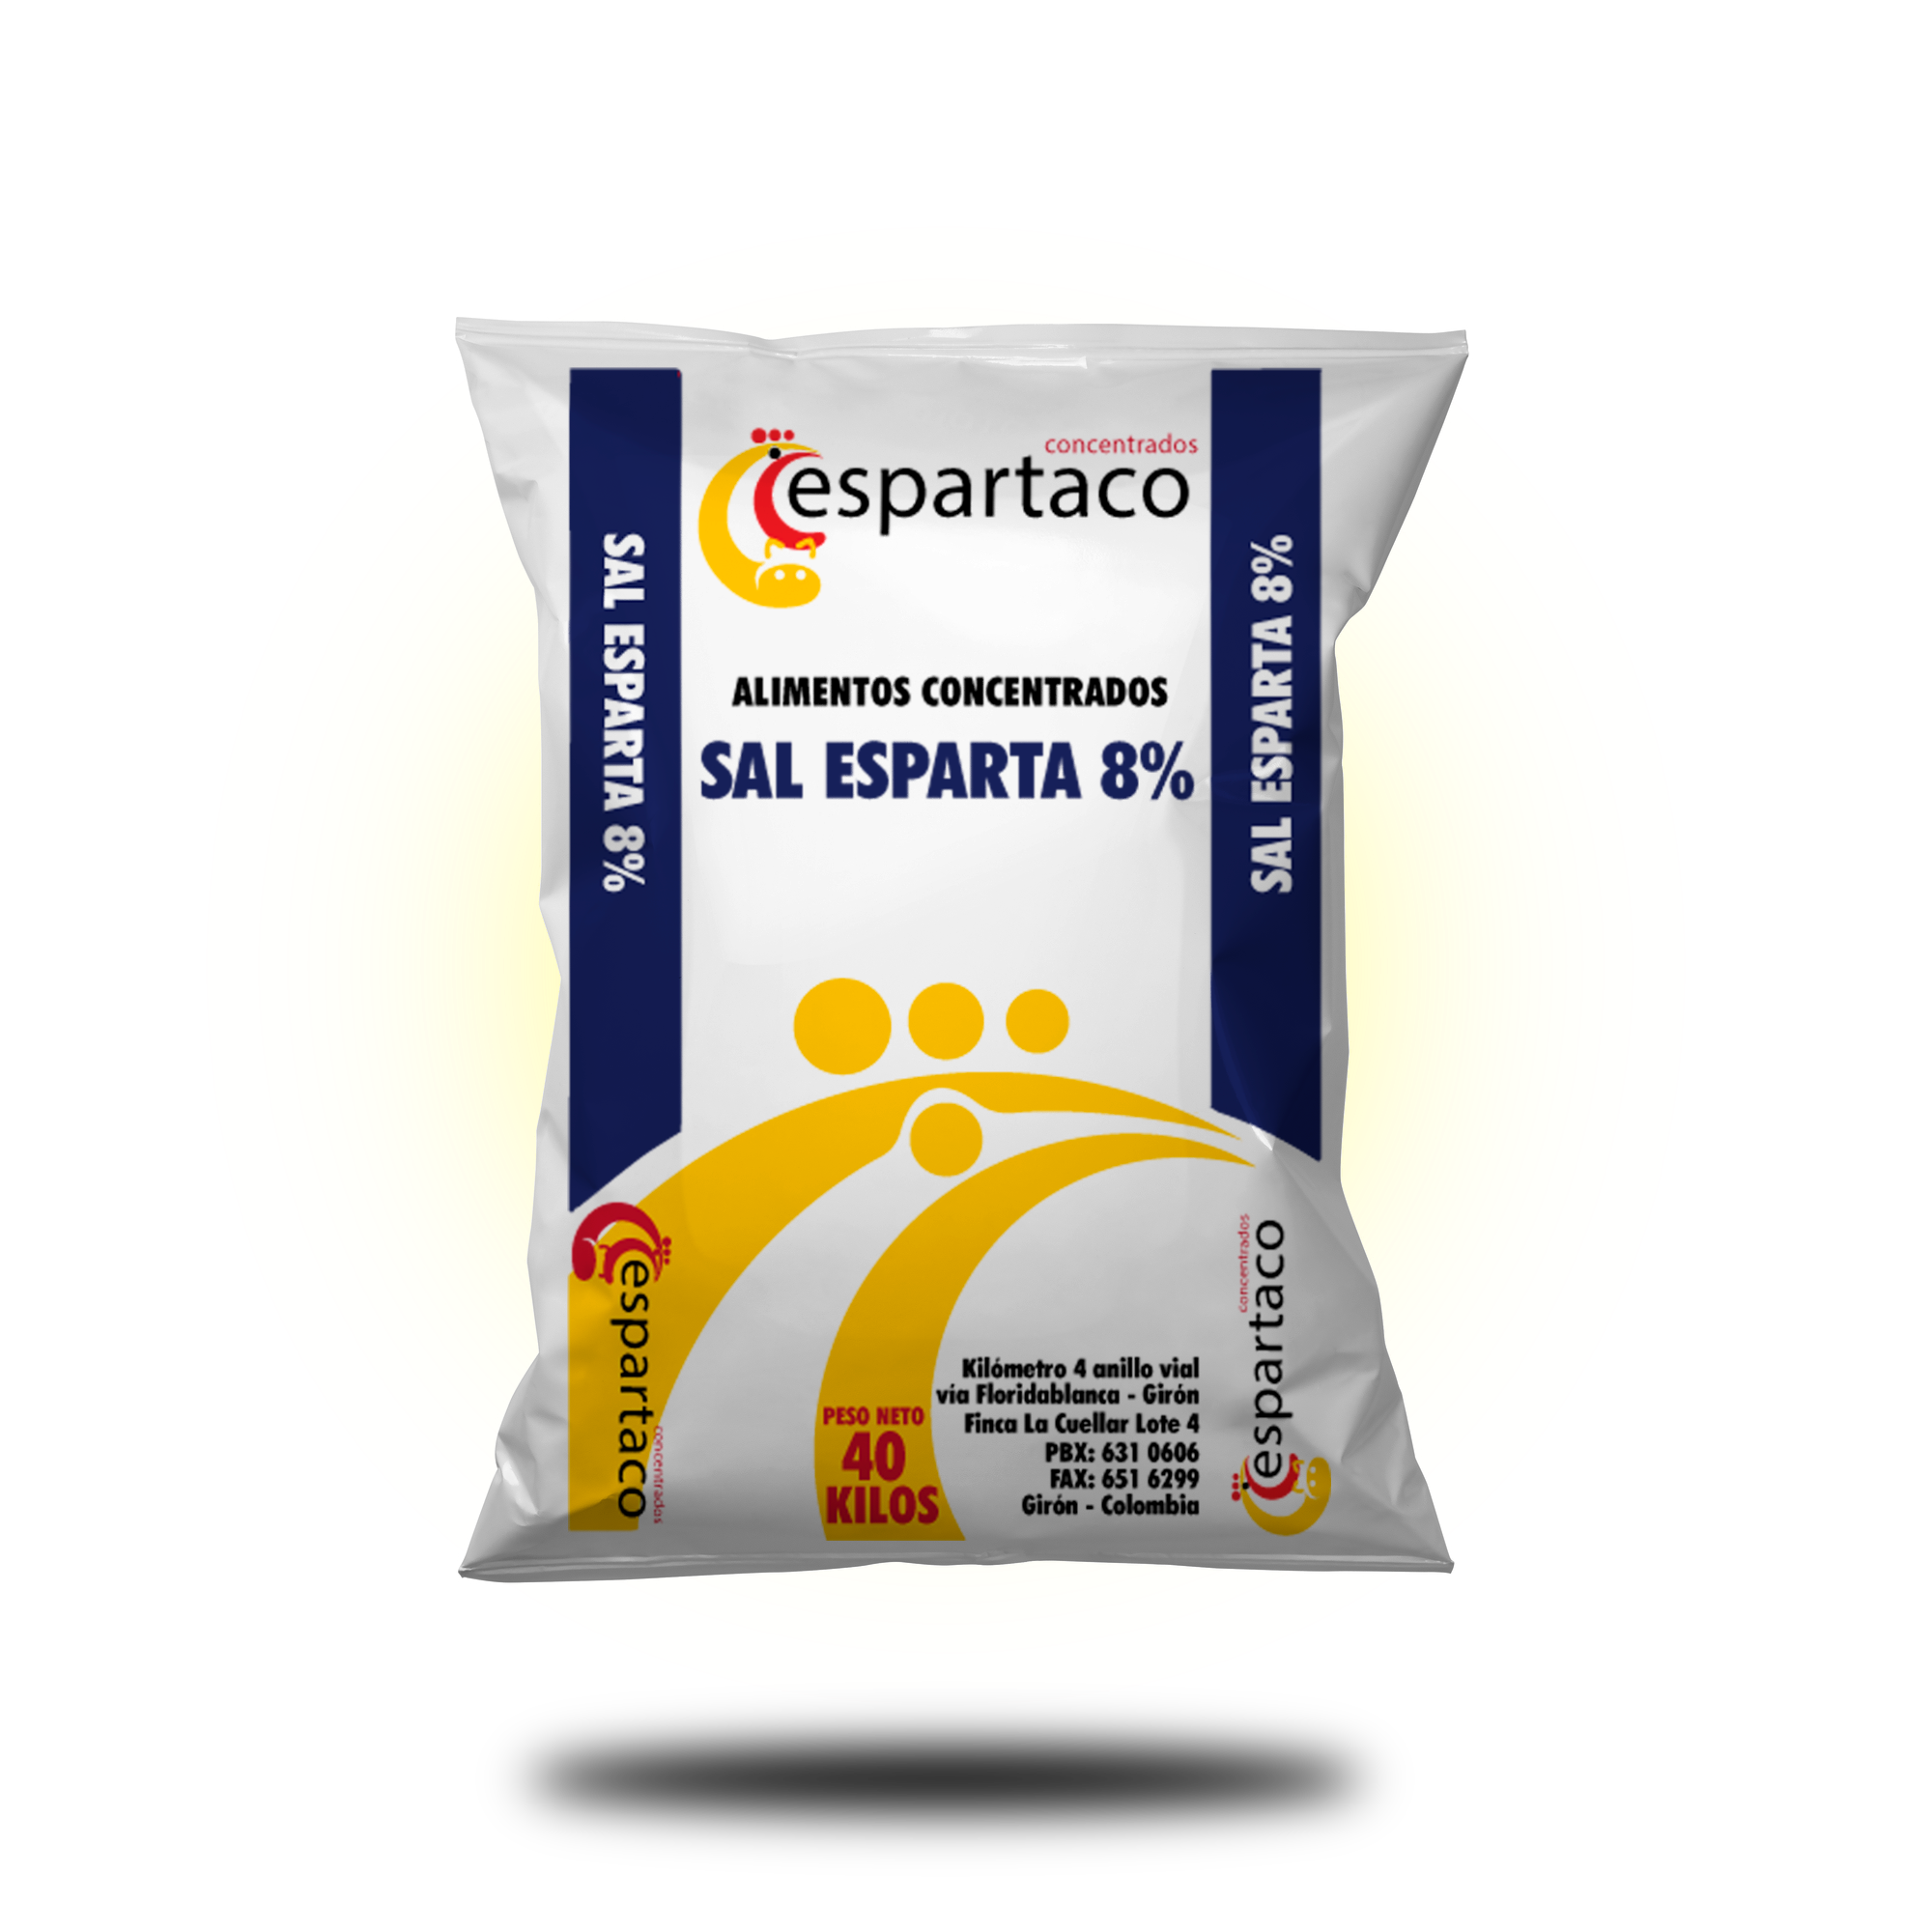 sal esparta 8% ganaderia alimentos concentrados espartaco